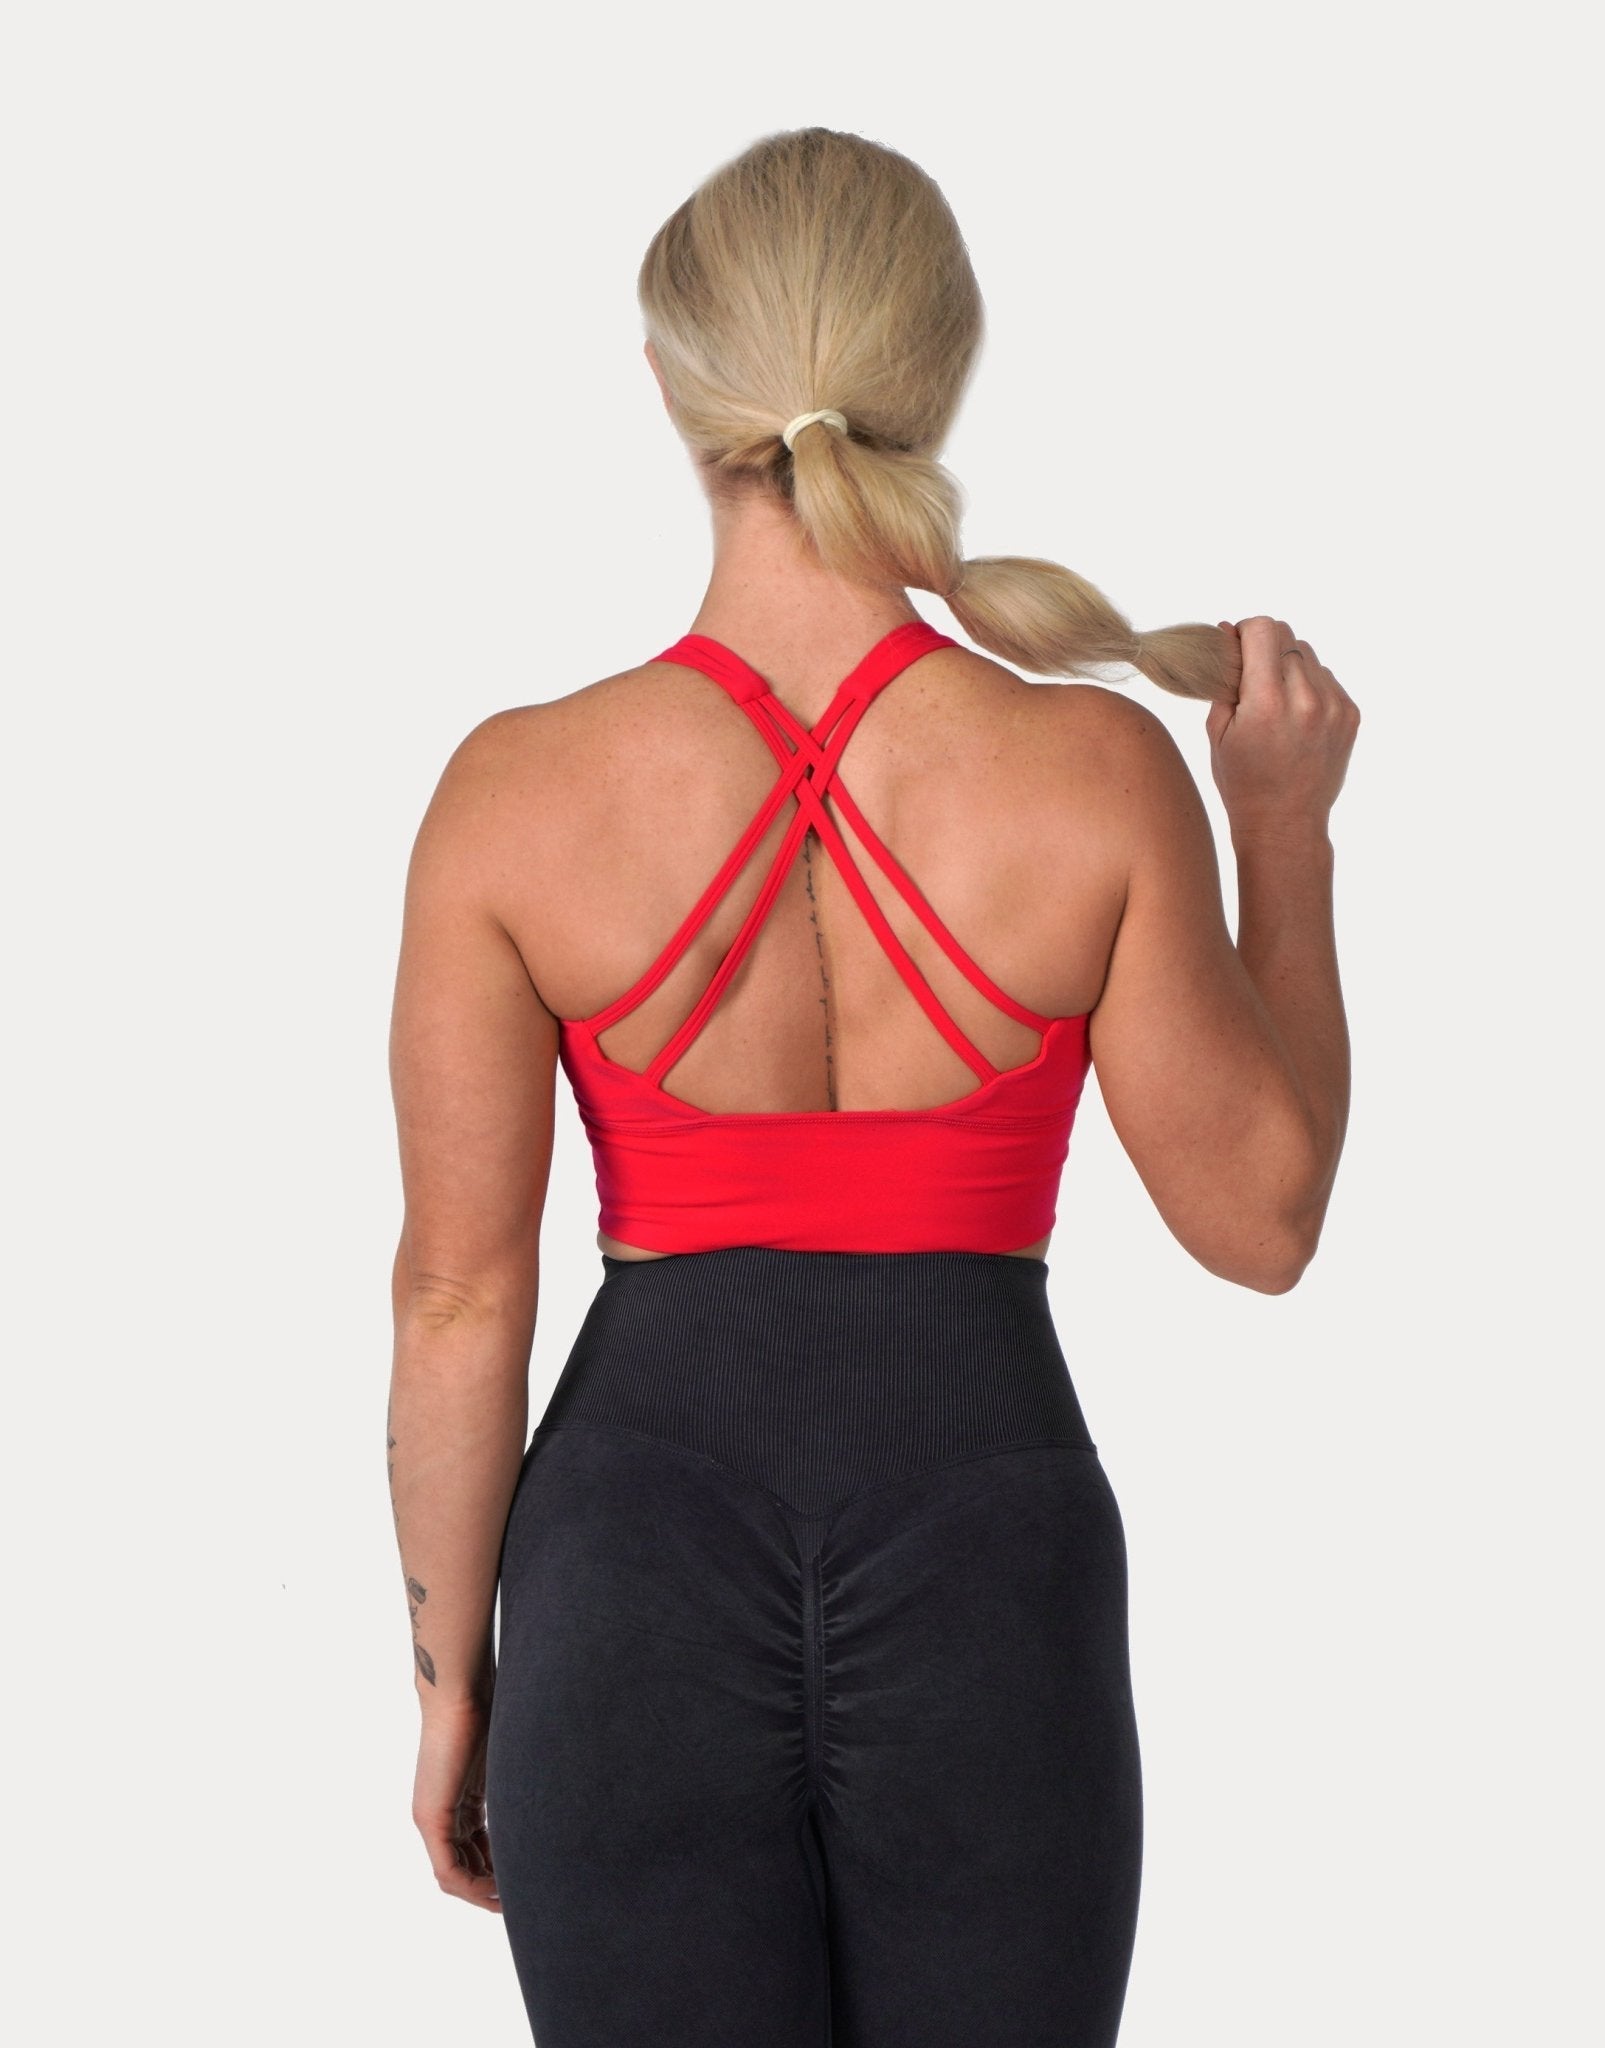 Buy Fitleasure Women's Athleisure Red Crop Top online